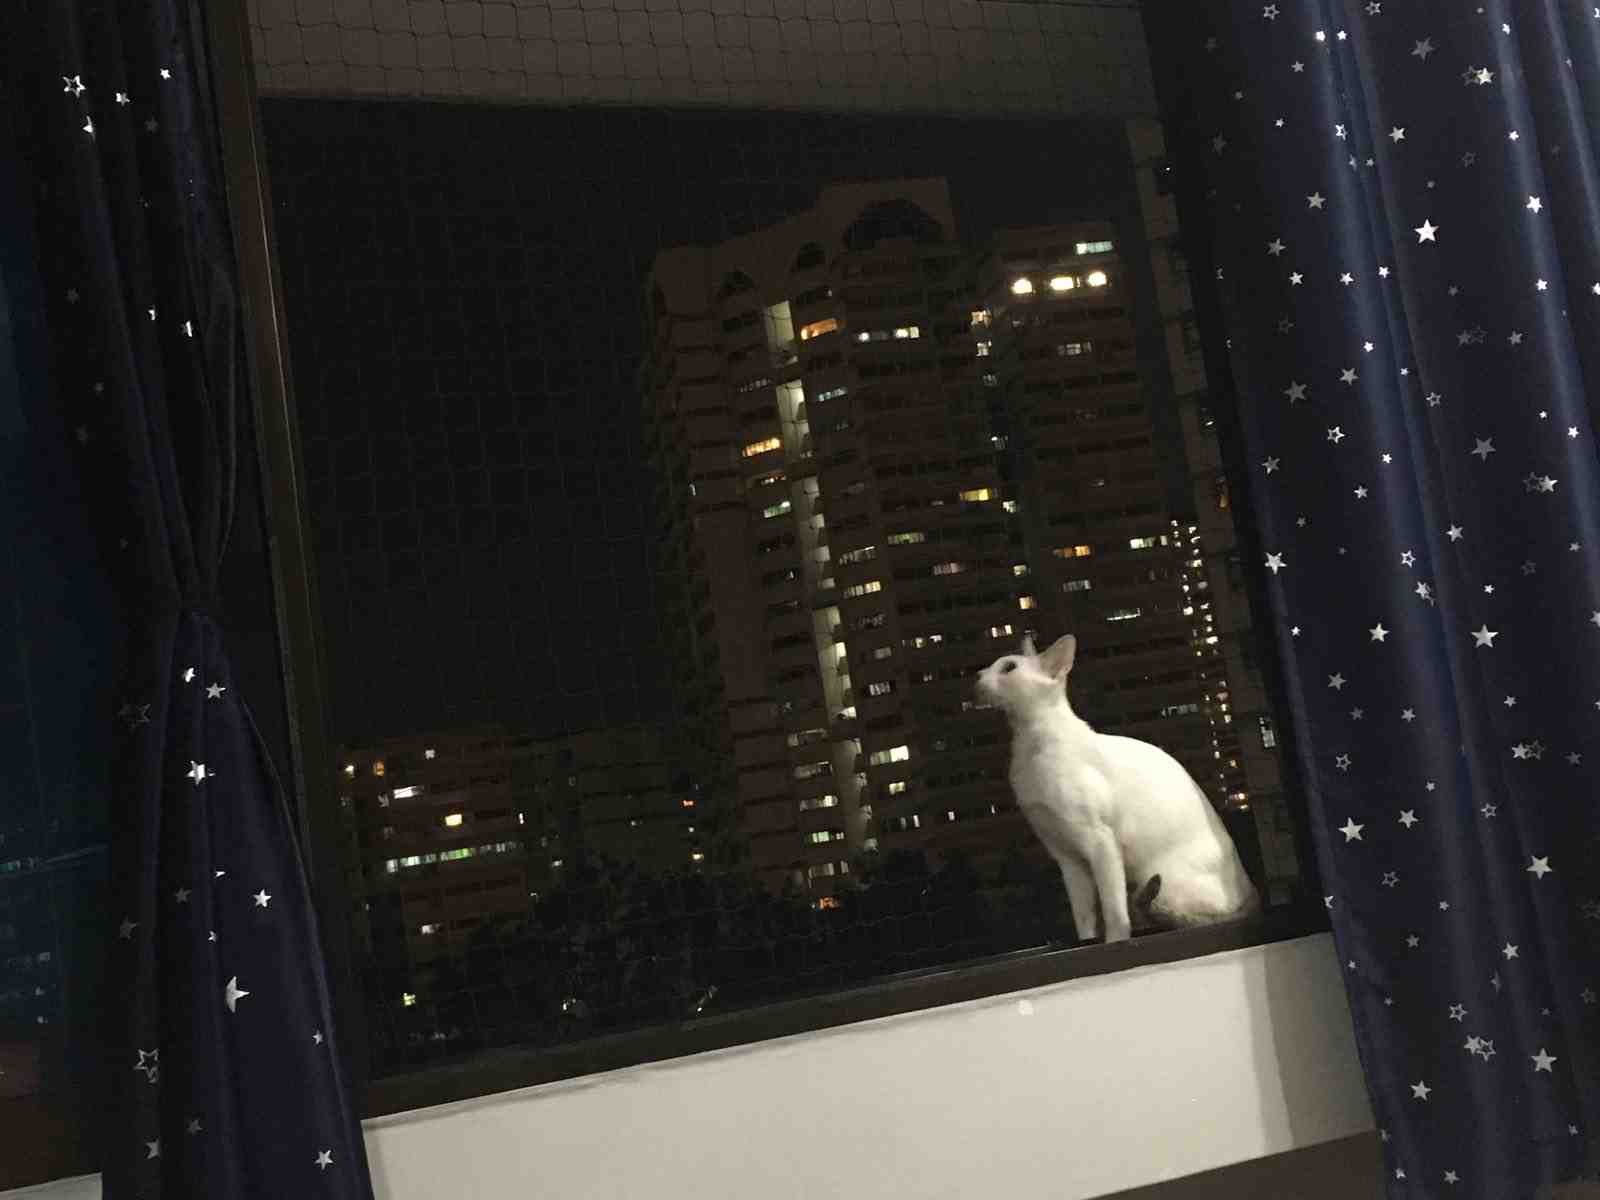 Comment faire pour que le chat ne tombe pas du balcon ?